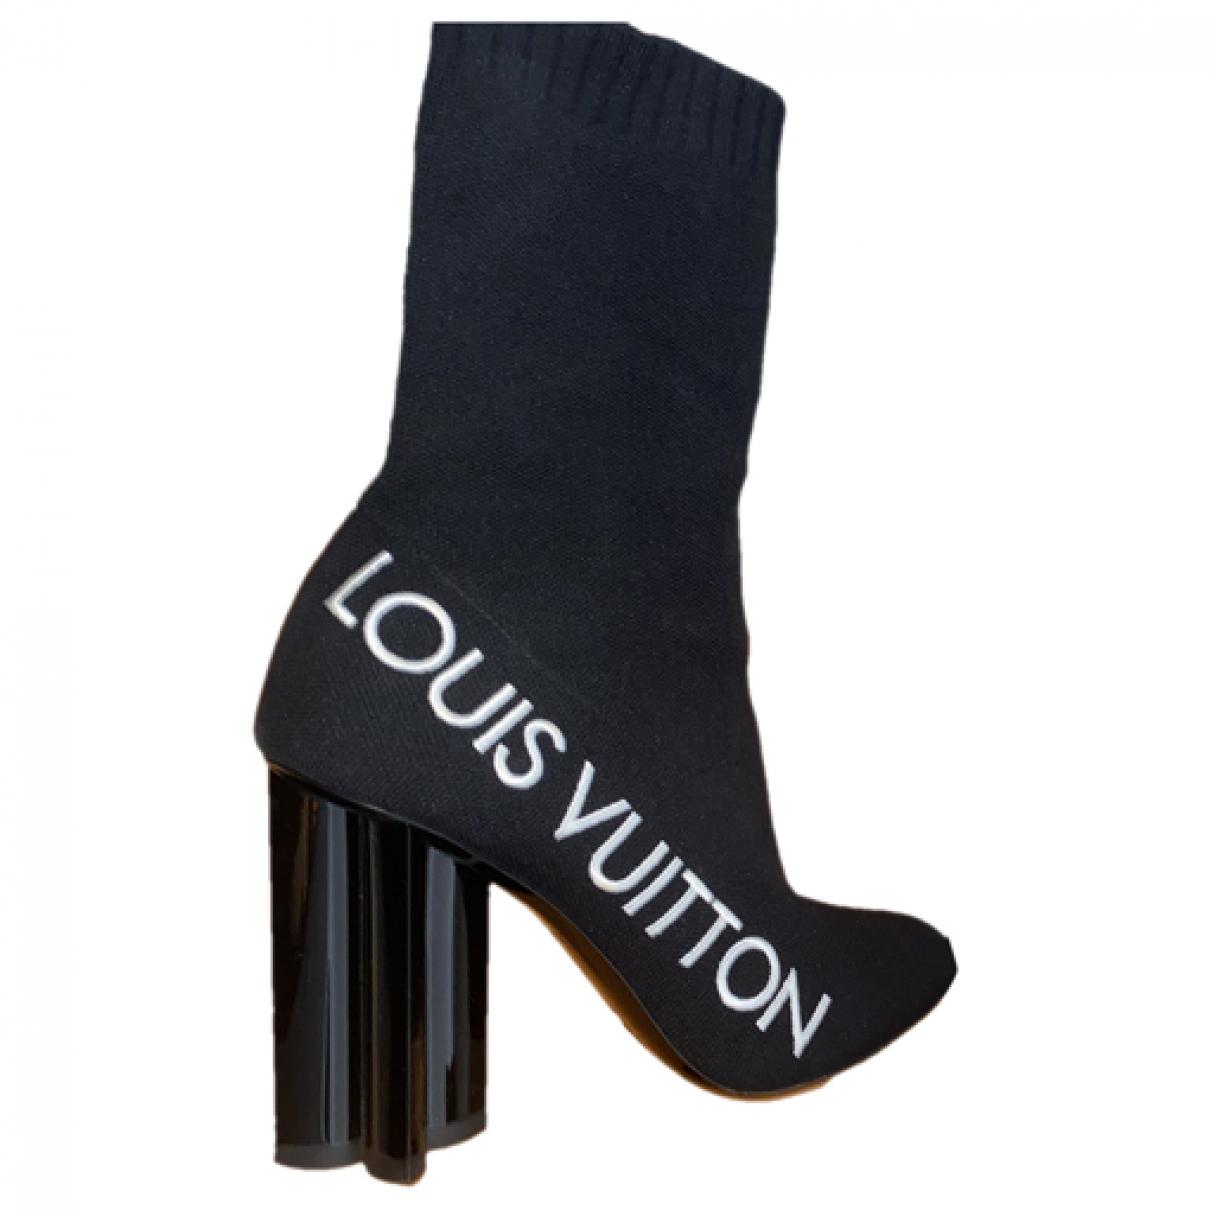 Louis Vuitton Monogram Velvet Silhouette Ankle Boots - Size 7.5 / 37.5, Louis  Vuitton Shoes